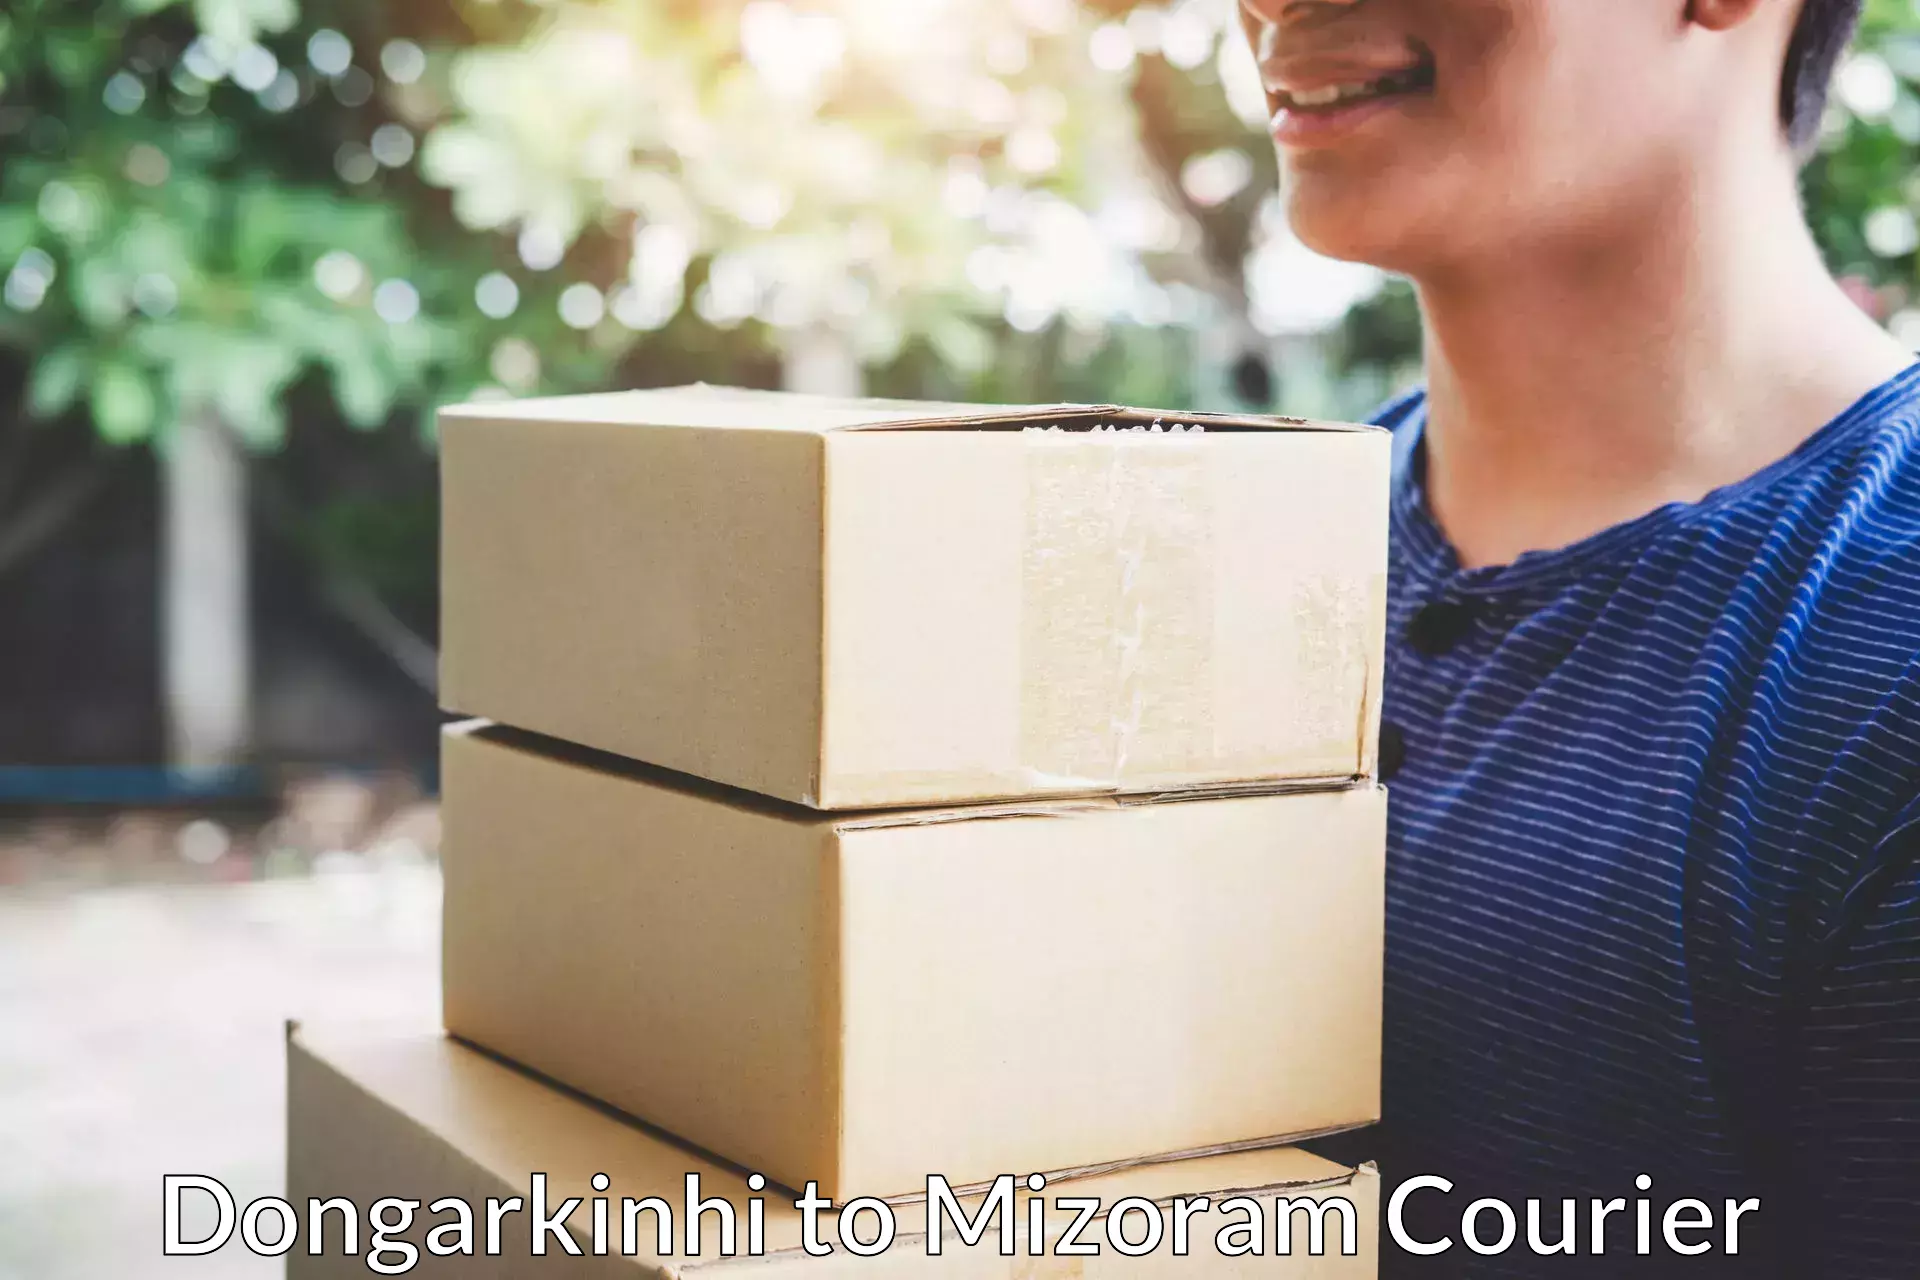 Expert goods movers Dongarkinhi to Mizoram